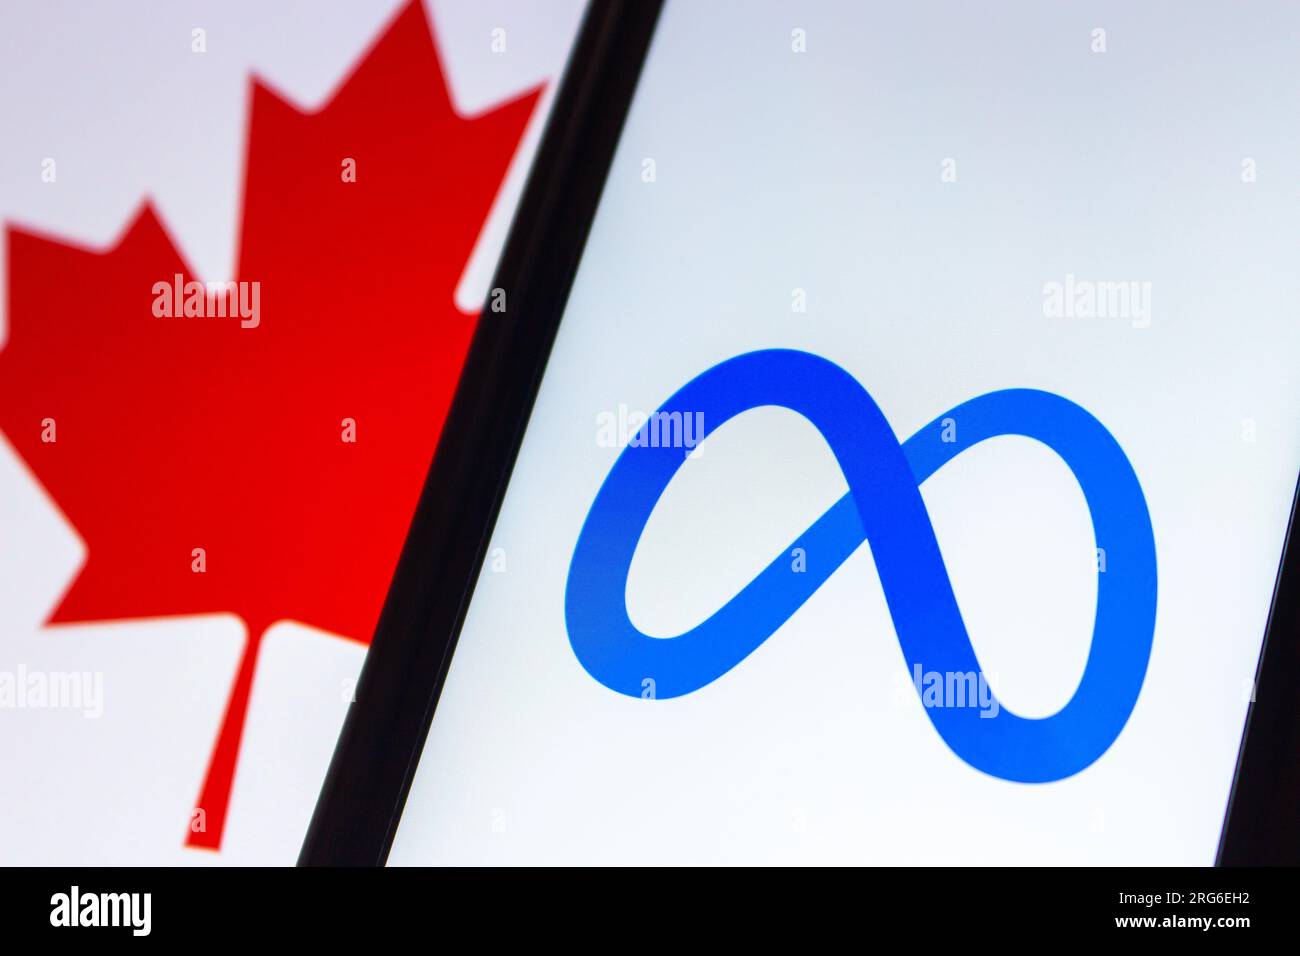 Image conceptuelle du logo de Meta Platforms, inc. Vu dans un iPhone sur fond de drapeau canadien. Drapeau du Canada avec logo Meta. Banque D'Images